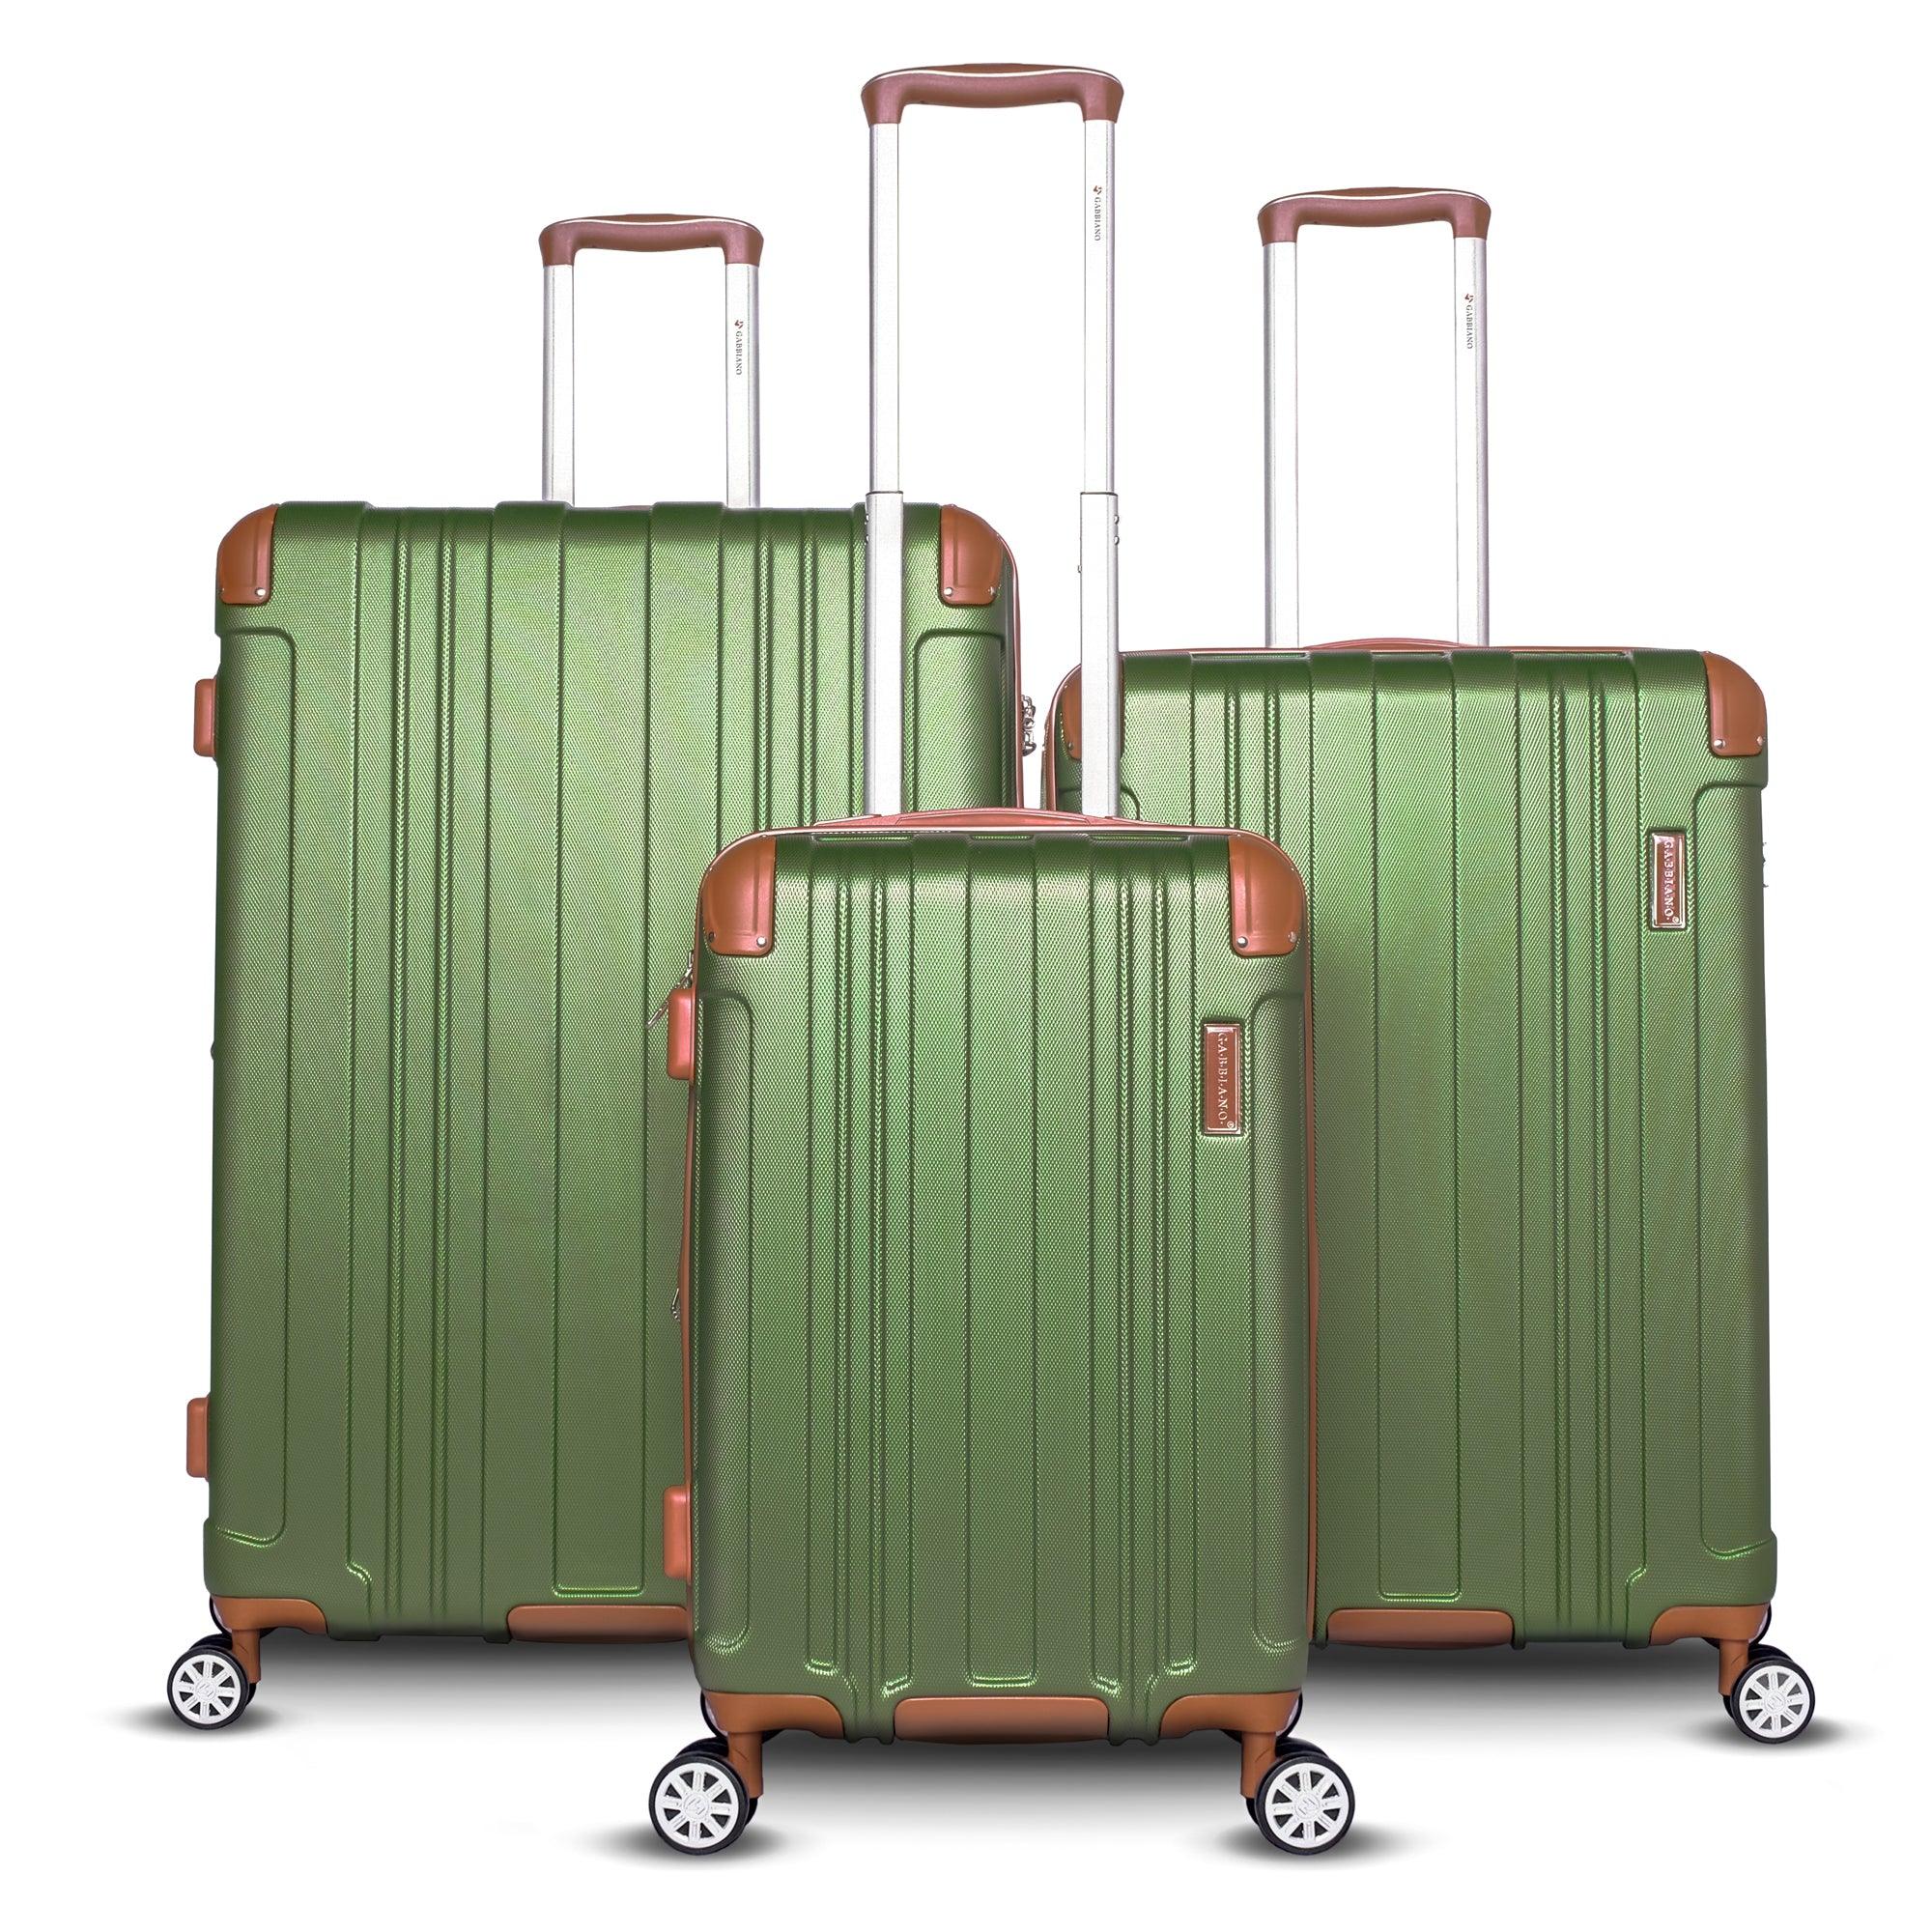 Ga2070 Pc+Abs Resin Hard Case 29'' - Voyage Luggage